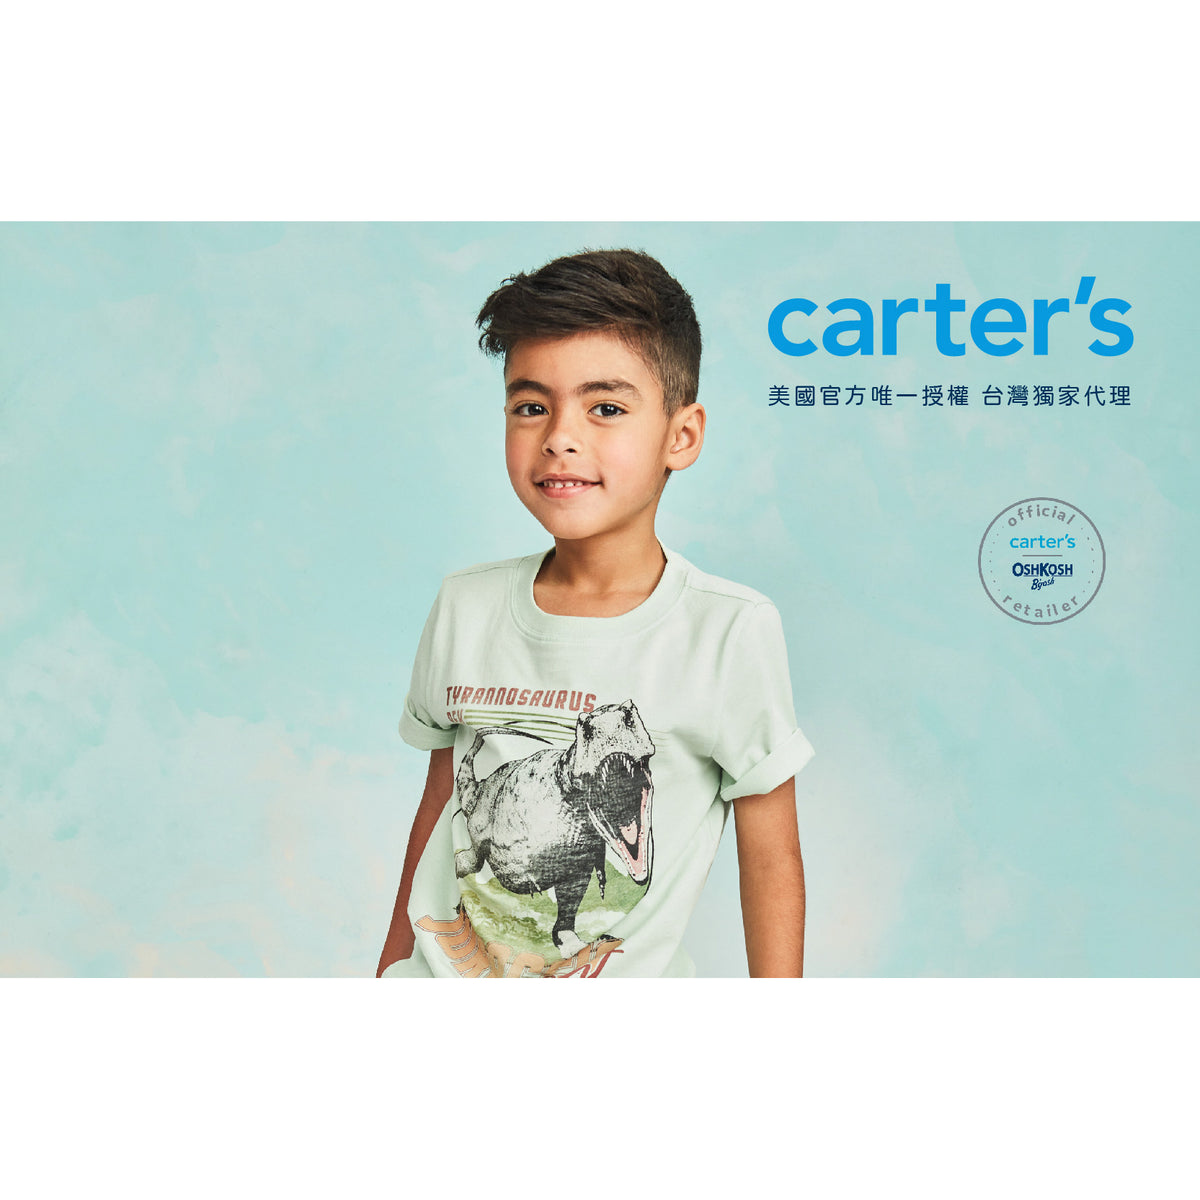 Carter's 休閒丹寧牛仔褲(6-8)